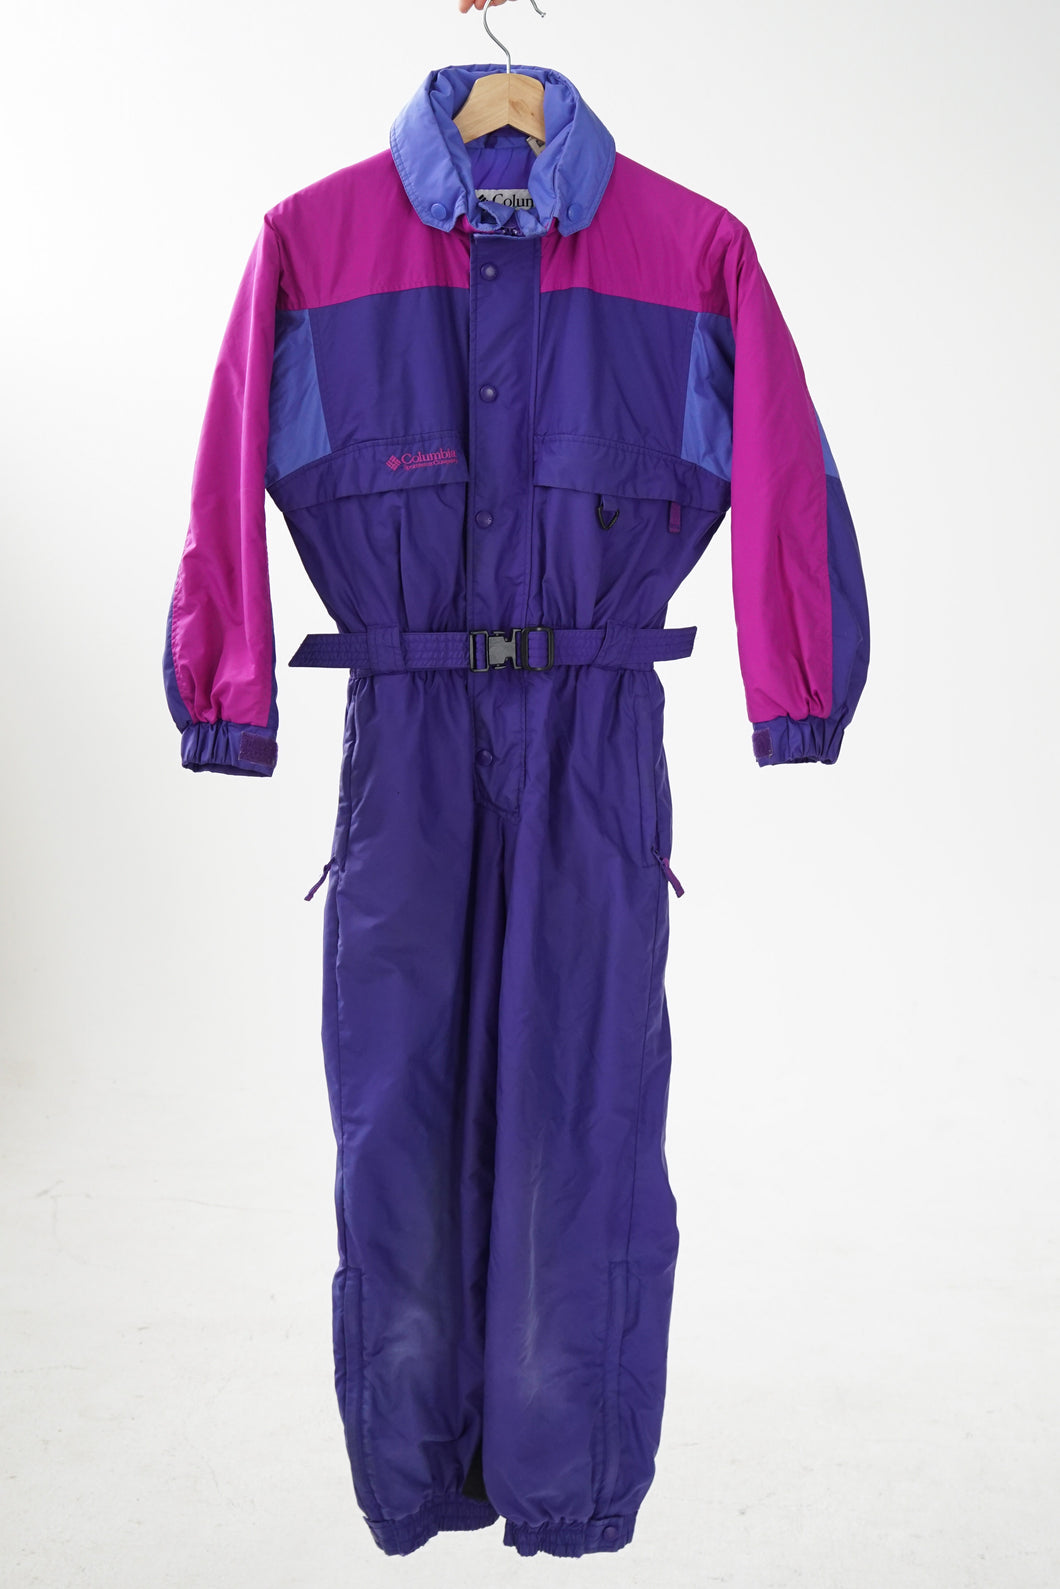 One piece retro ski suit Columbia, snow suit vintage pour enfant mauve rose taille 10/12ans